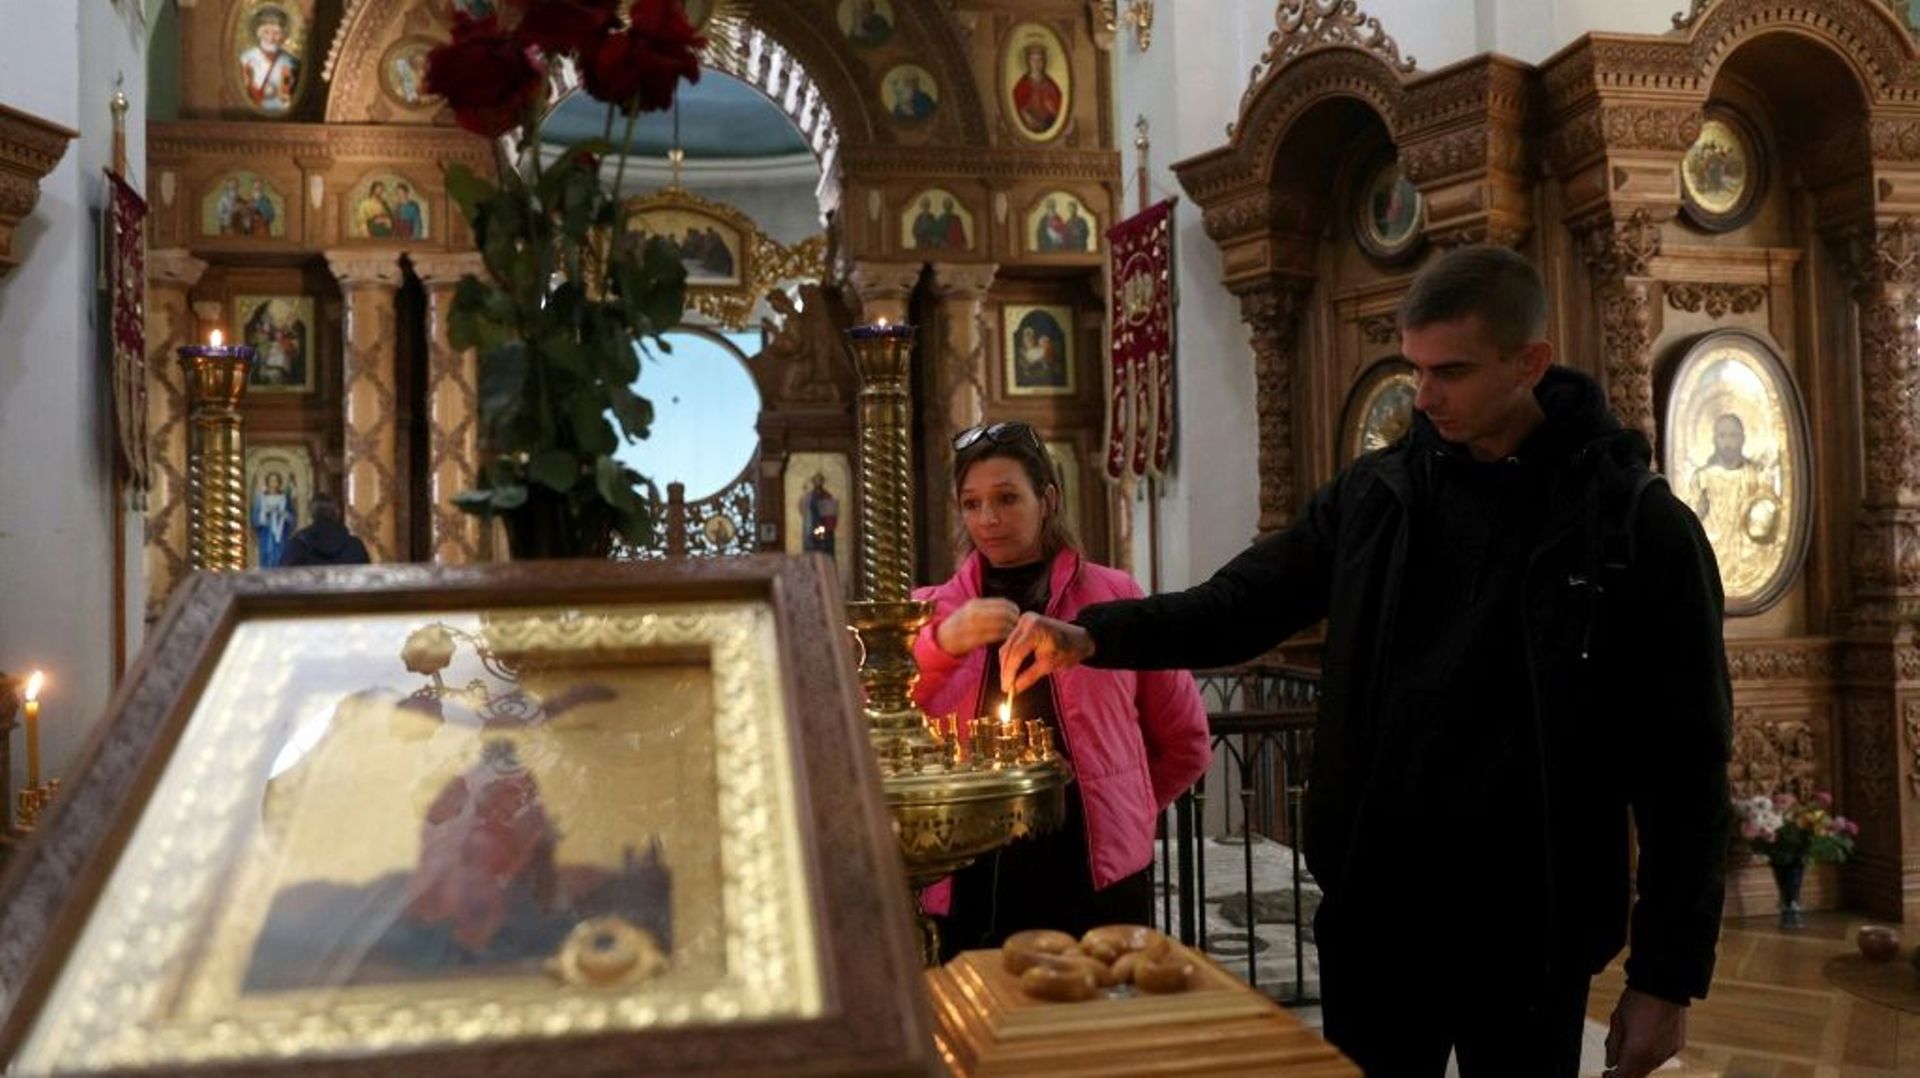 Des habitants allument des bougies dans la cathédrale Sainte-Catherine à Kherson (Sud de l’Ukraine), le 14 novembre 2022